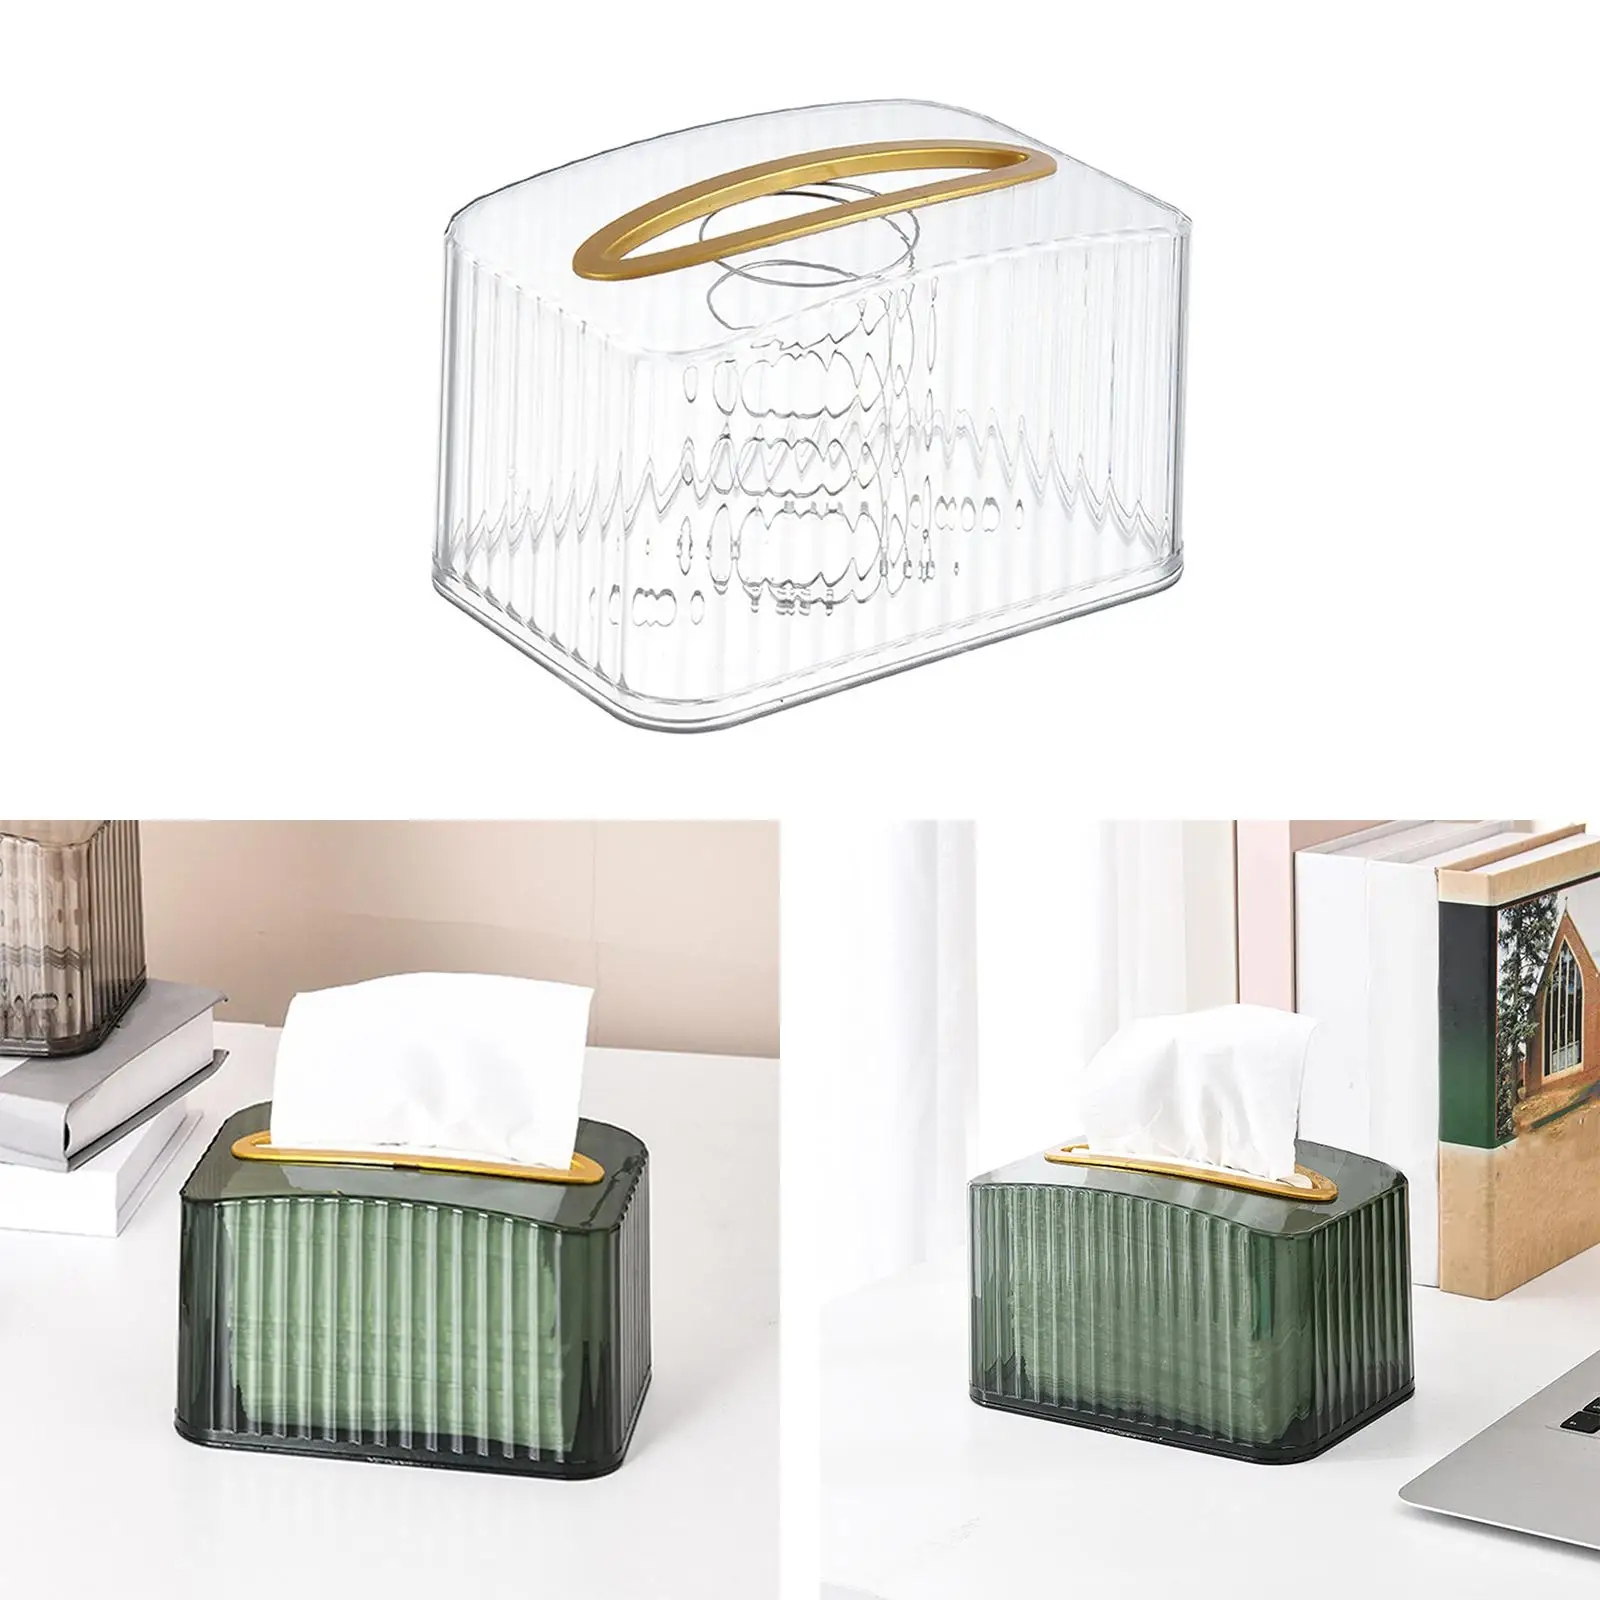 Tissue Dispenser Box  Decor Napkin Box Holders for Bedroom Dressers Desk